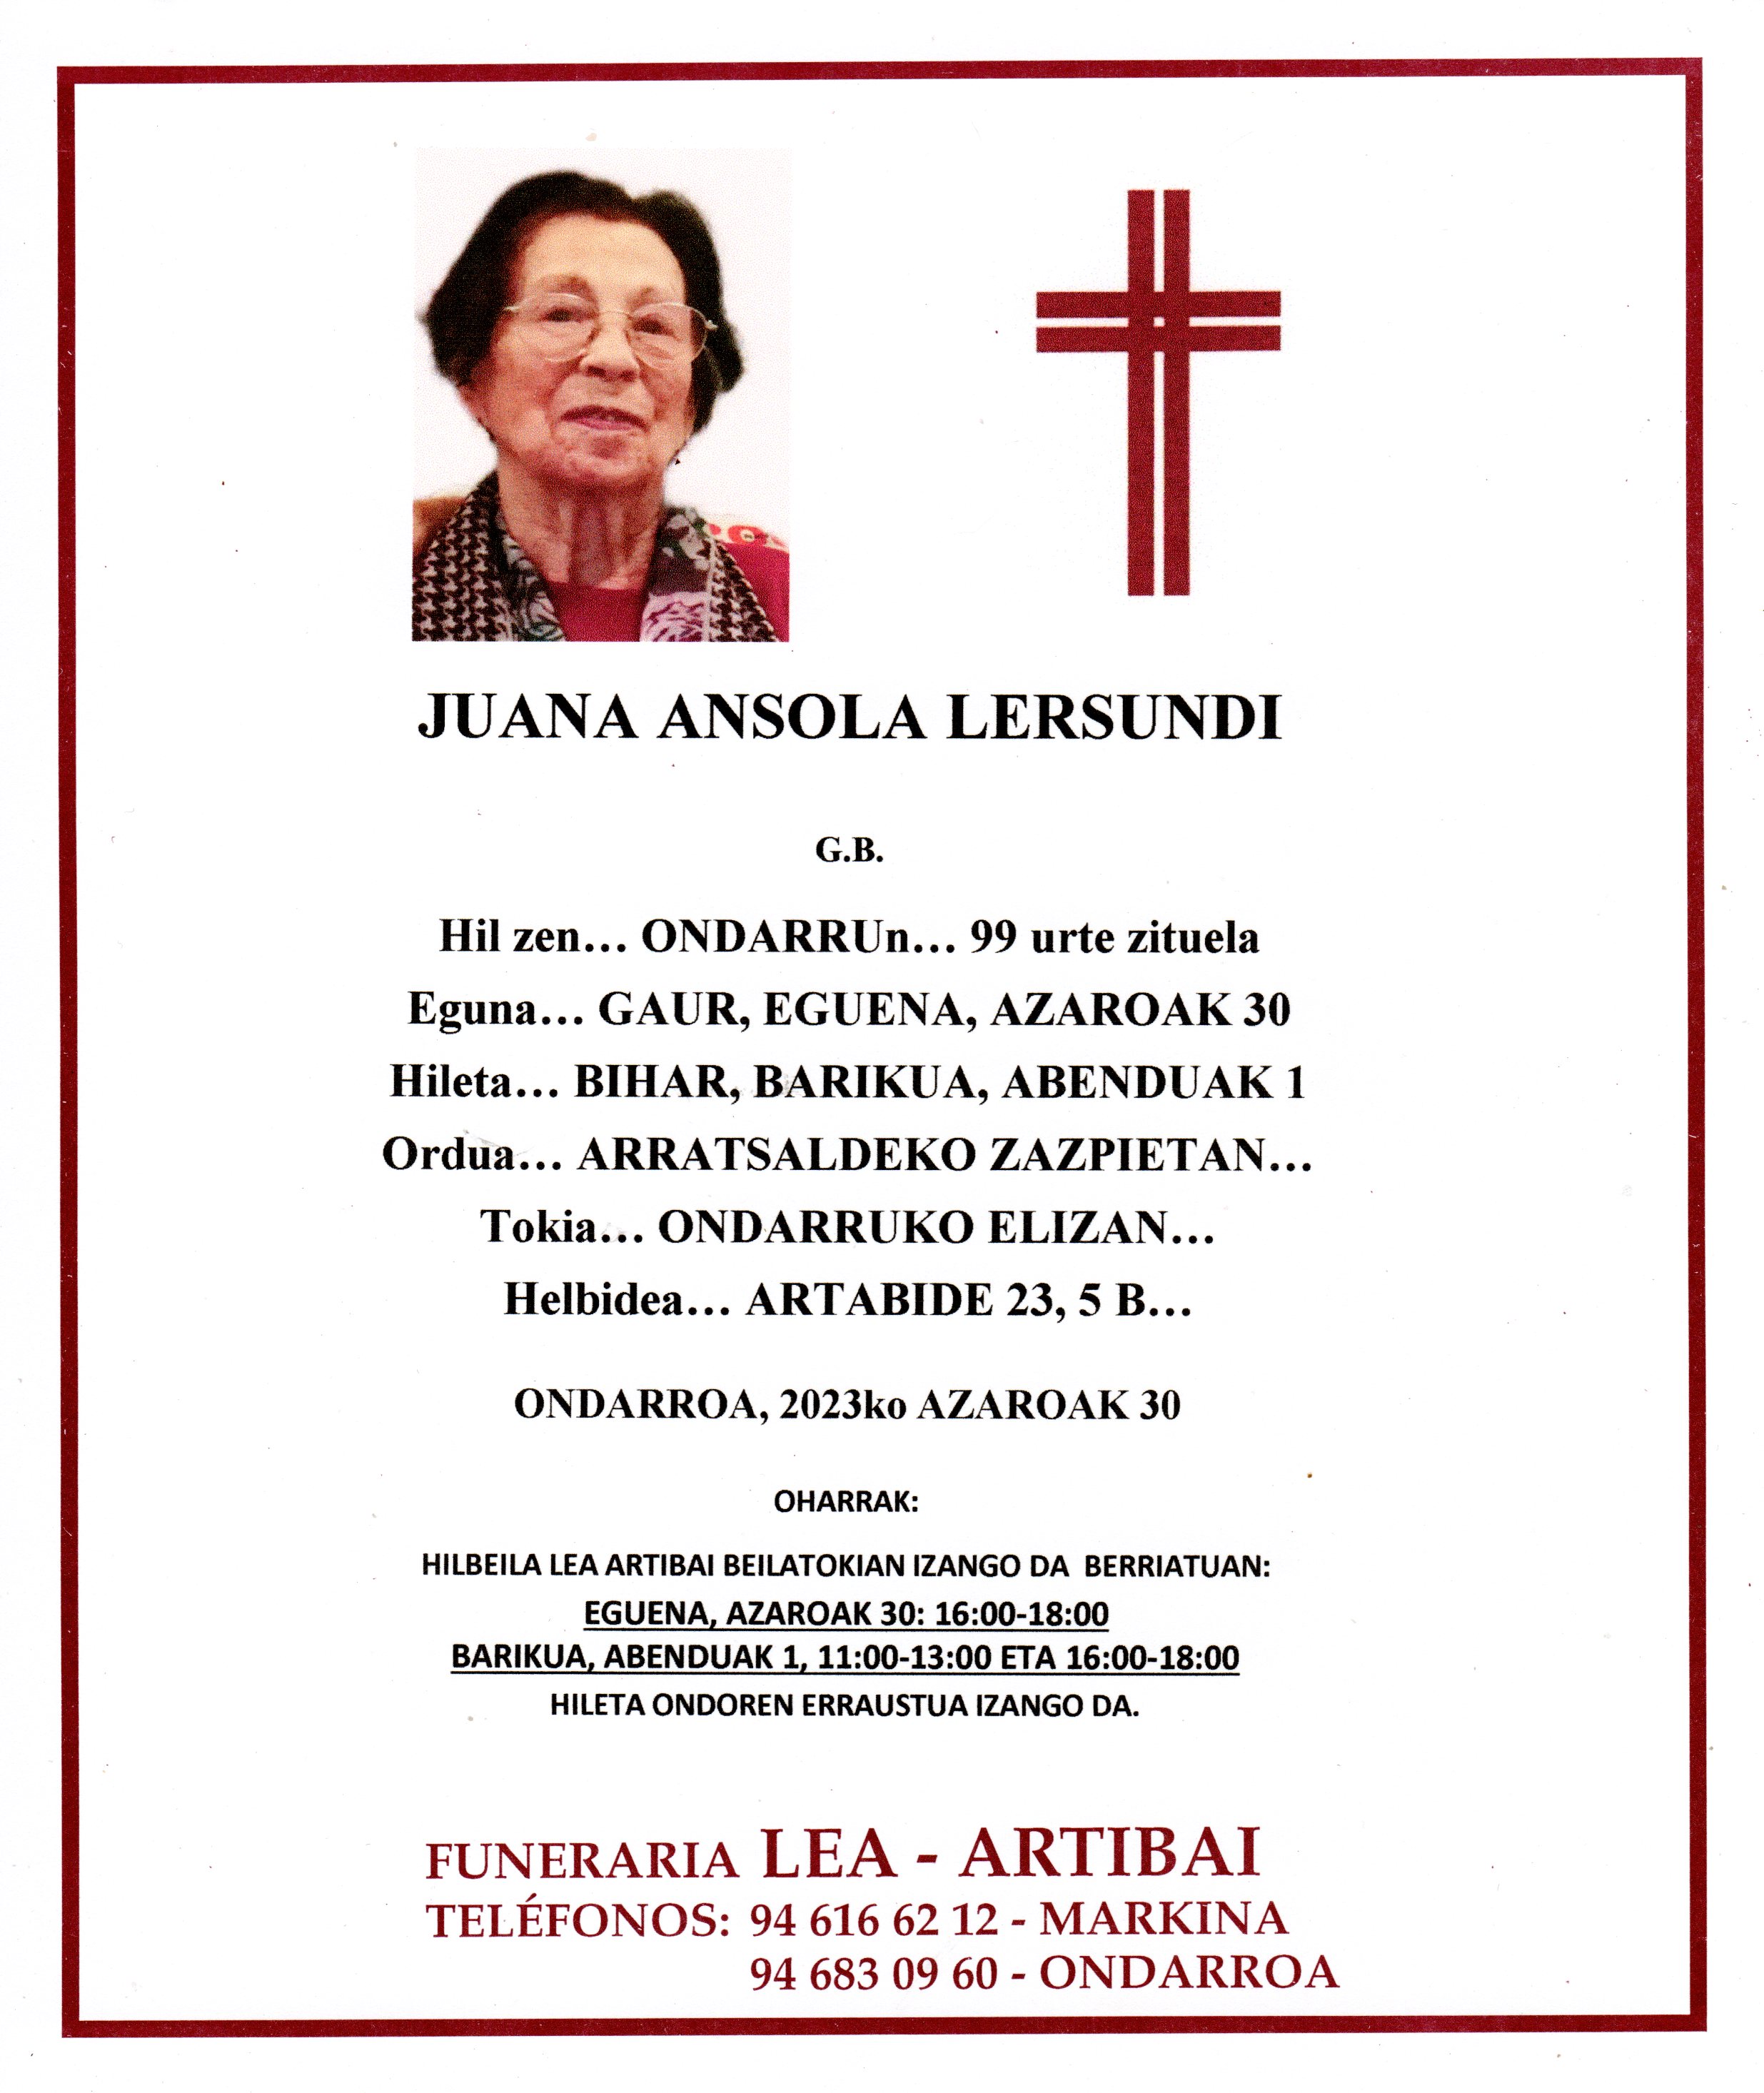 Juana Ansola Lersundi